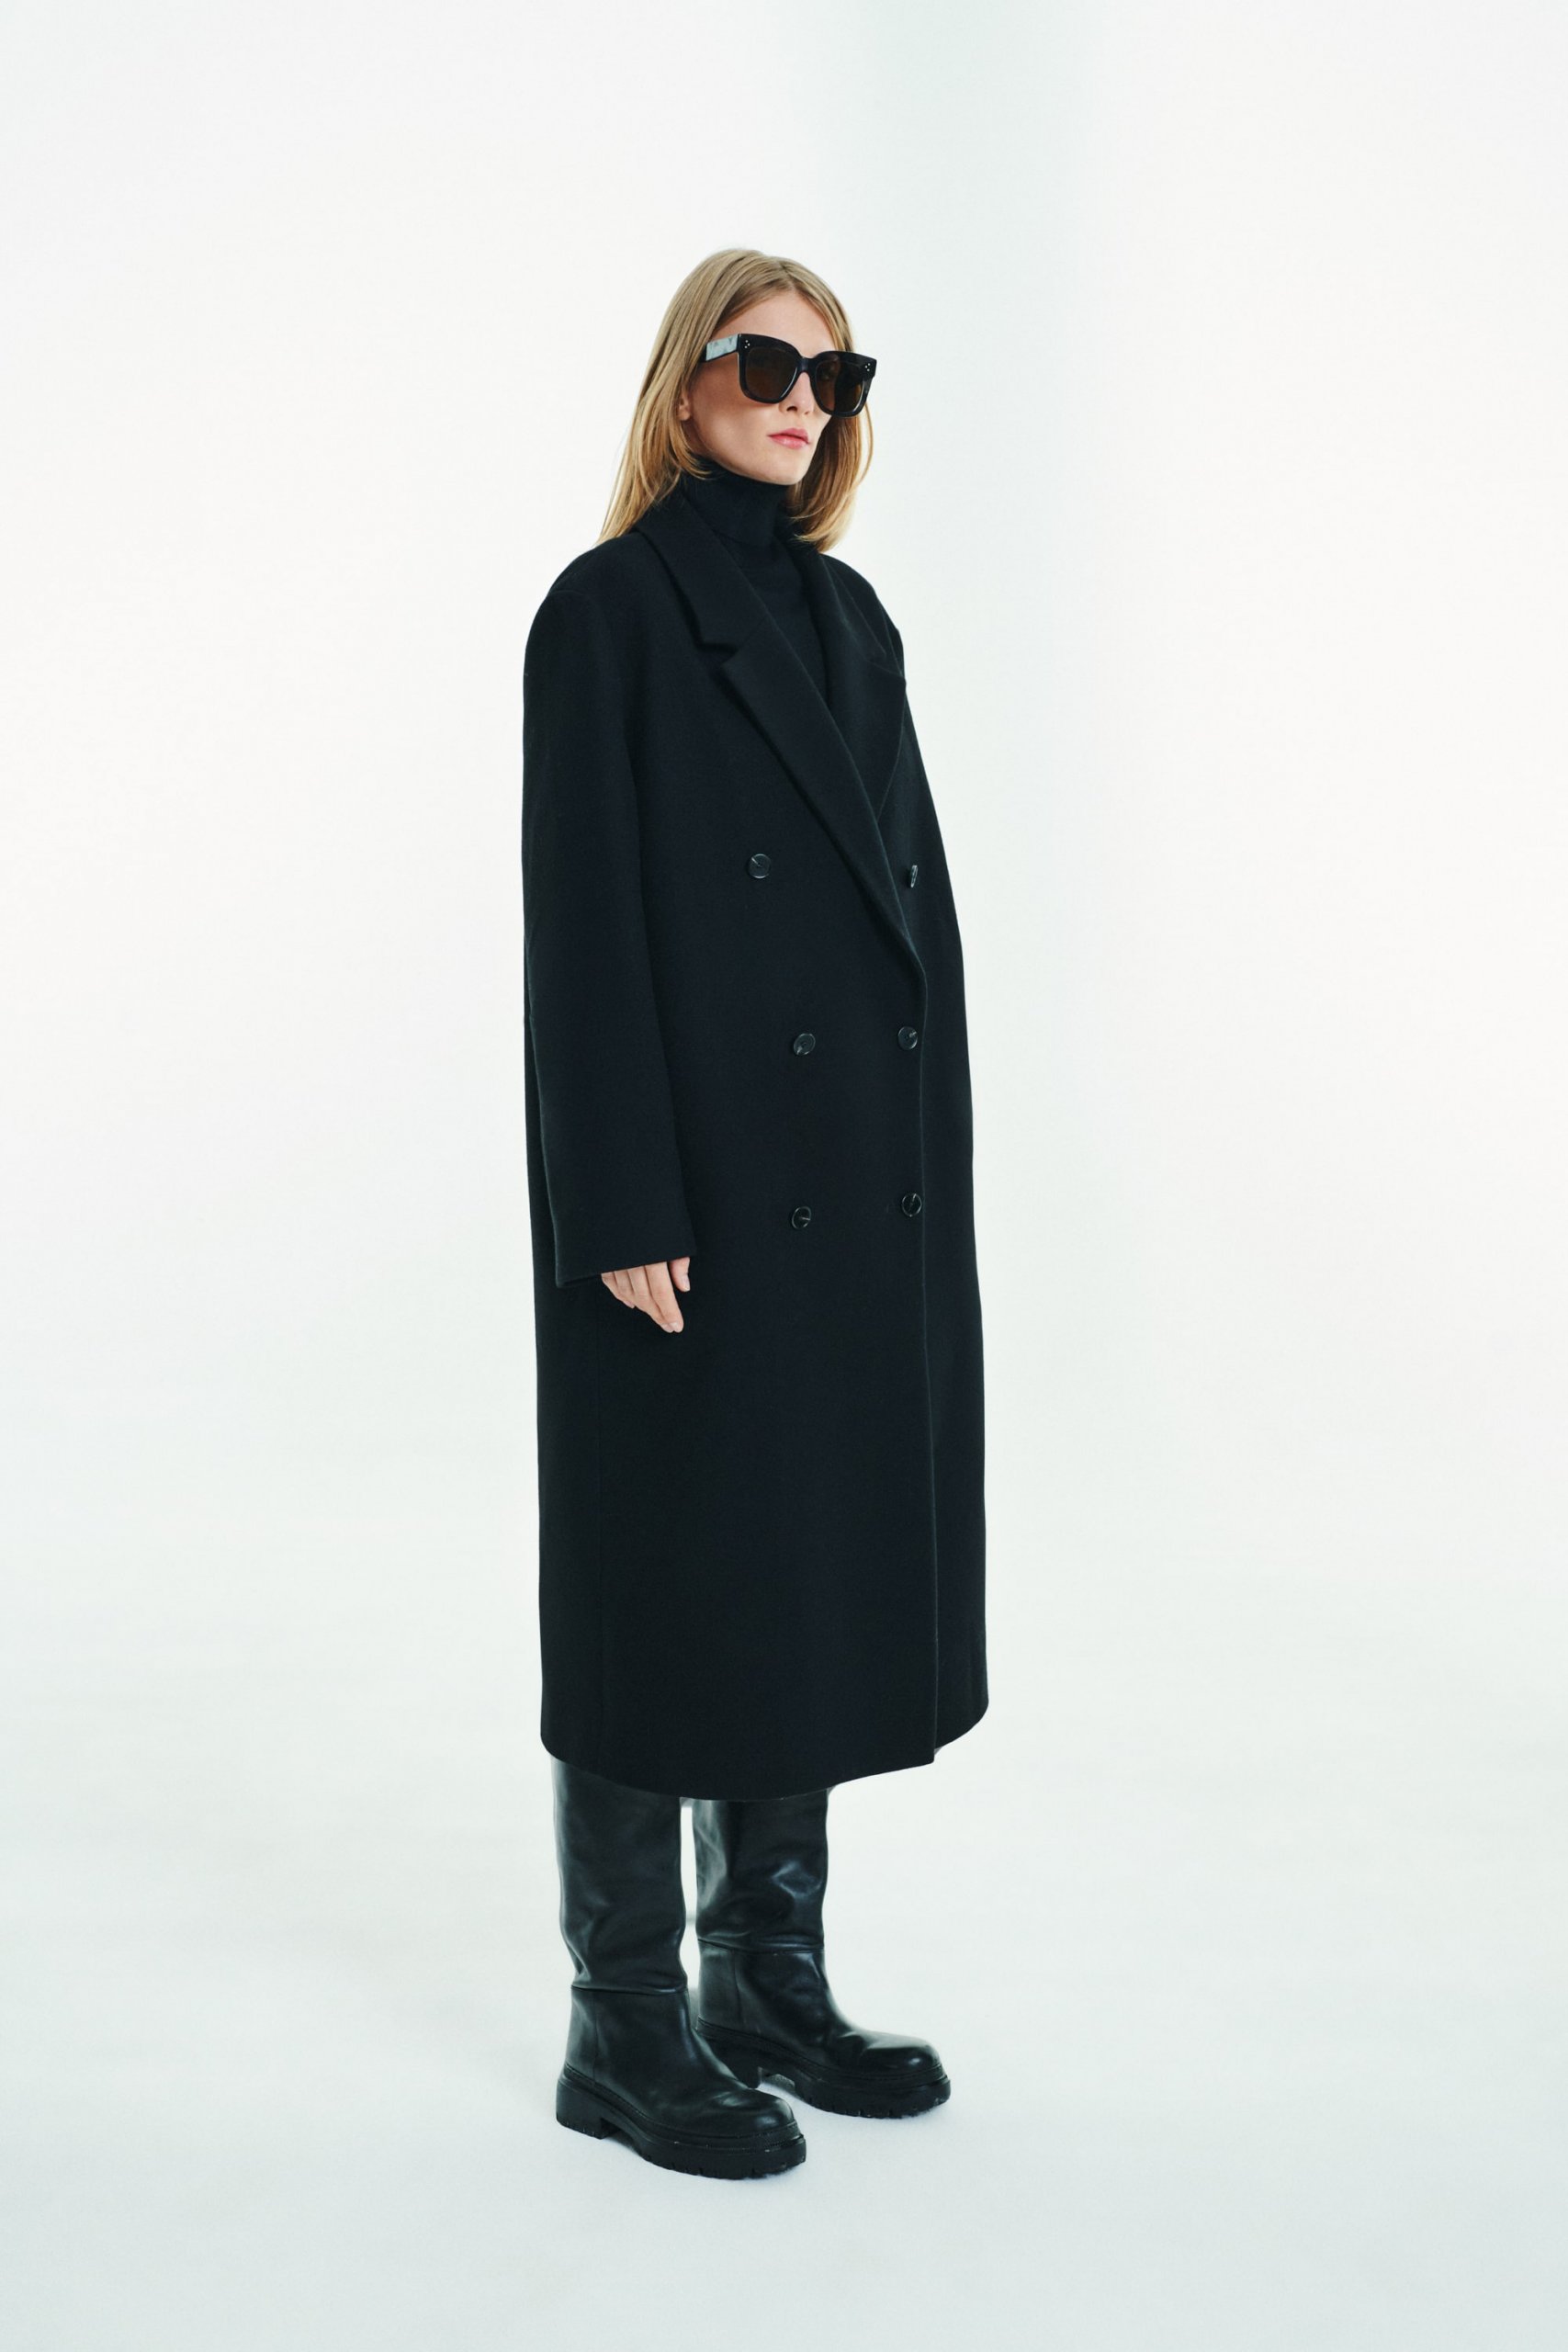 Long Woolen Black Coat